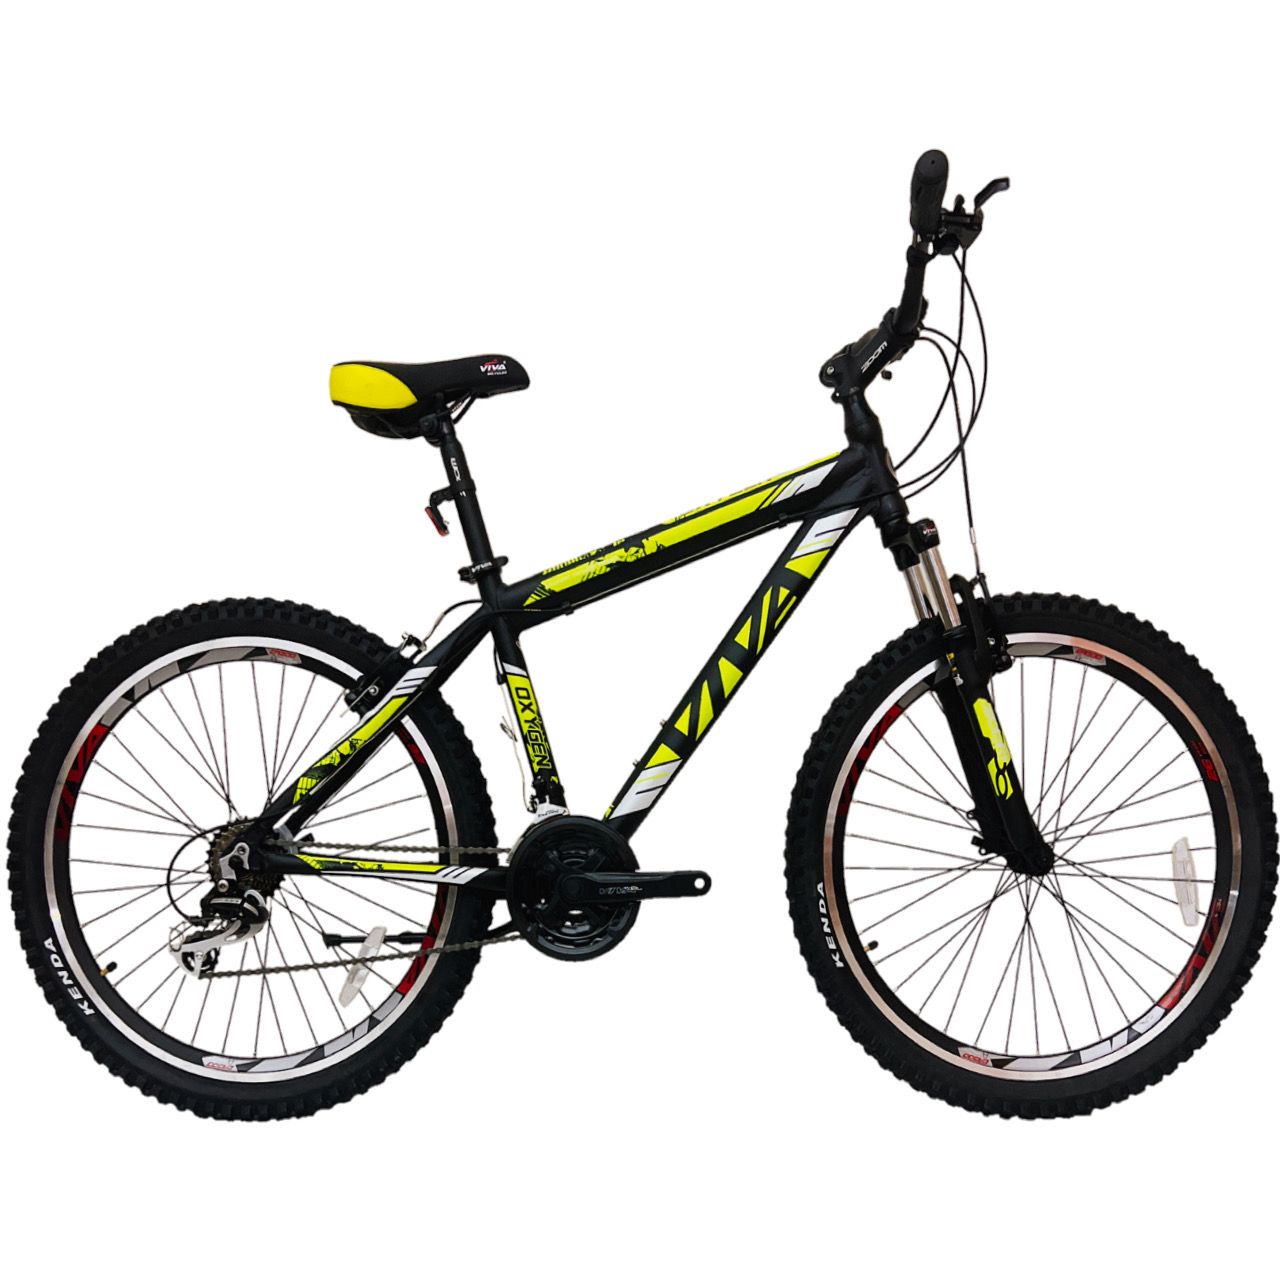 دوچرخه کوهستان ویوا مدل OXYGEN کد 100 سایز طوقه 26 -  - 1